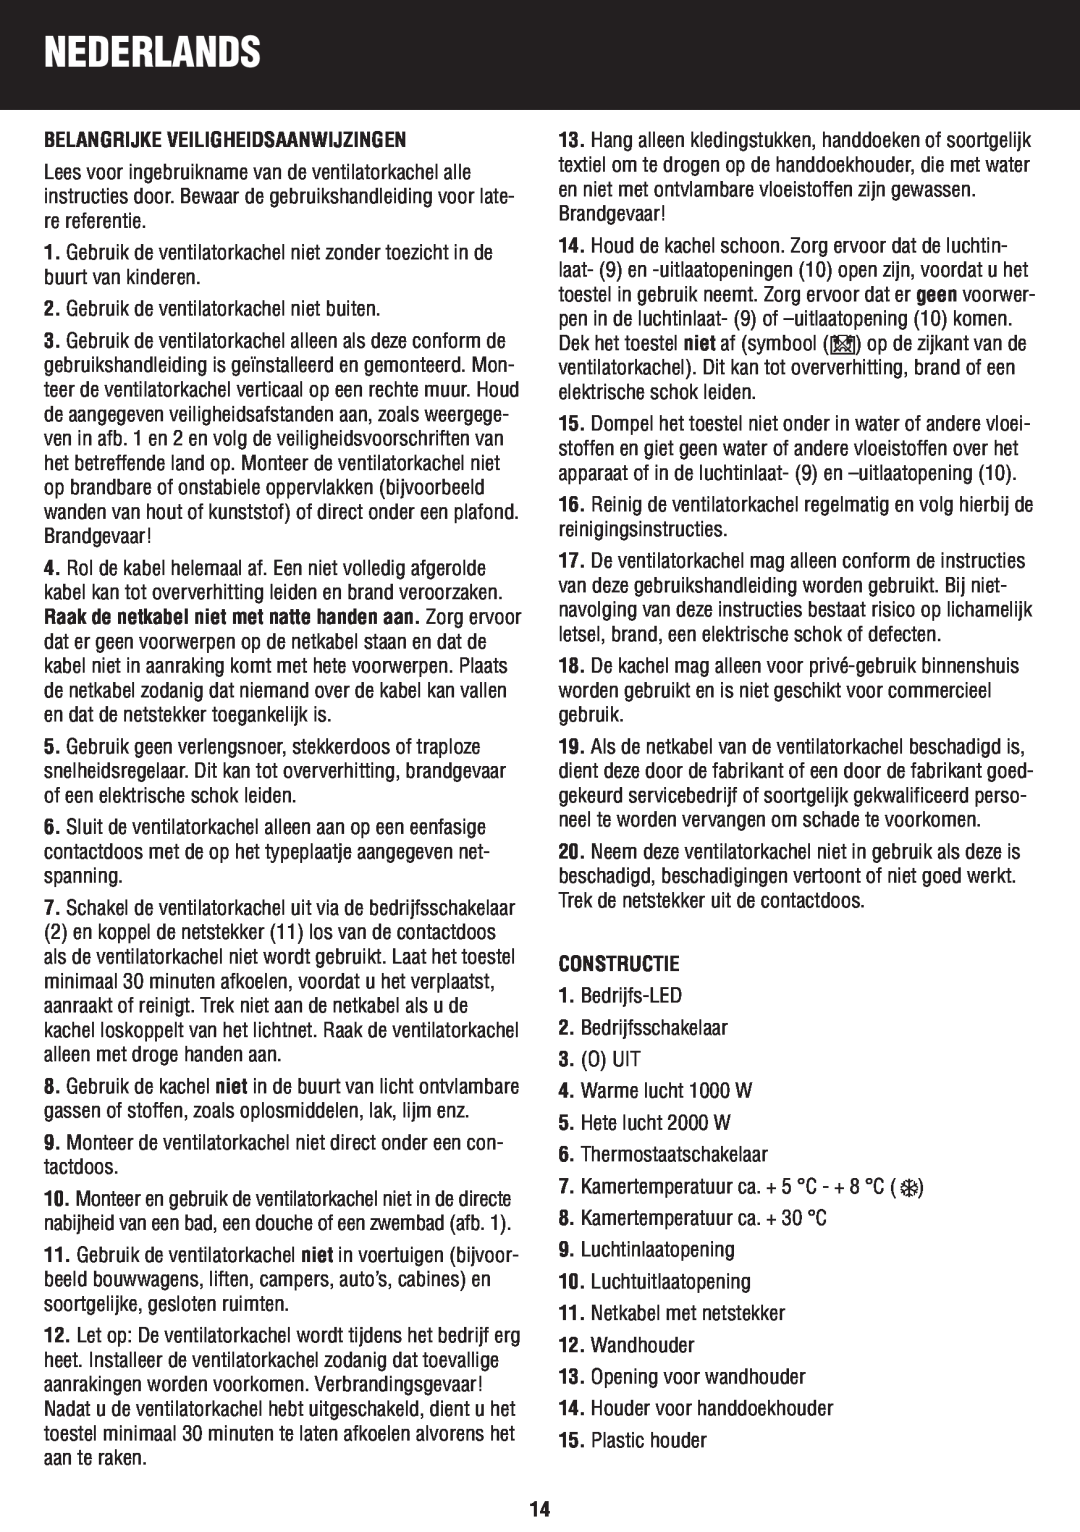 Honeywell BH-777FTE manual do utilizador Nederlands, Belangrijke Veiligheidsaanwijzingen, Constructie 